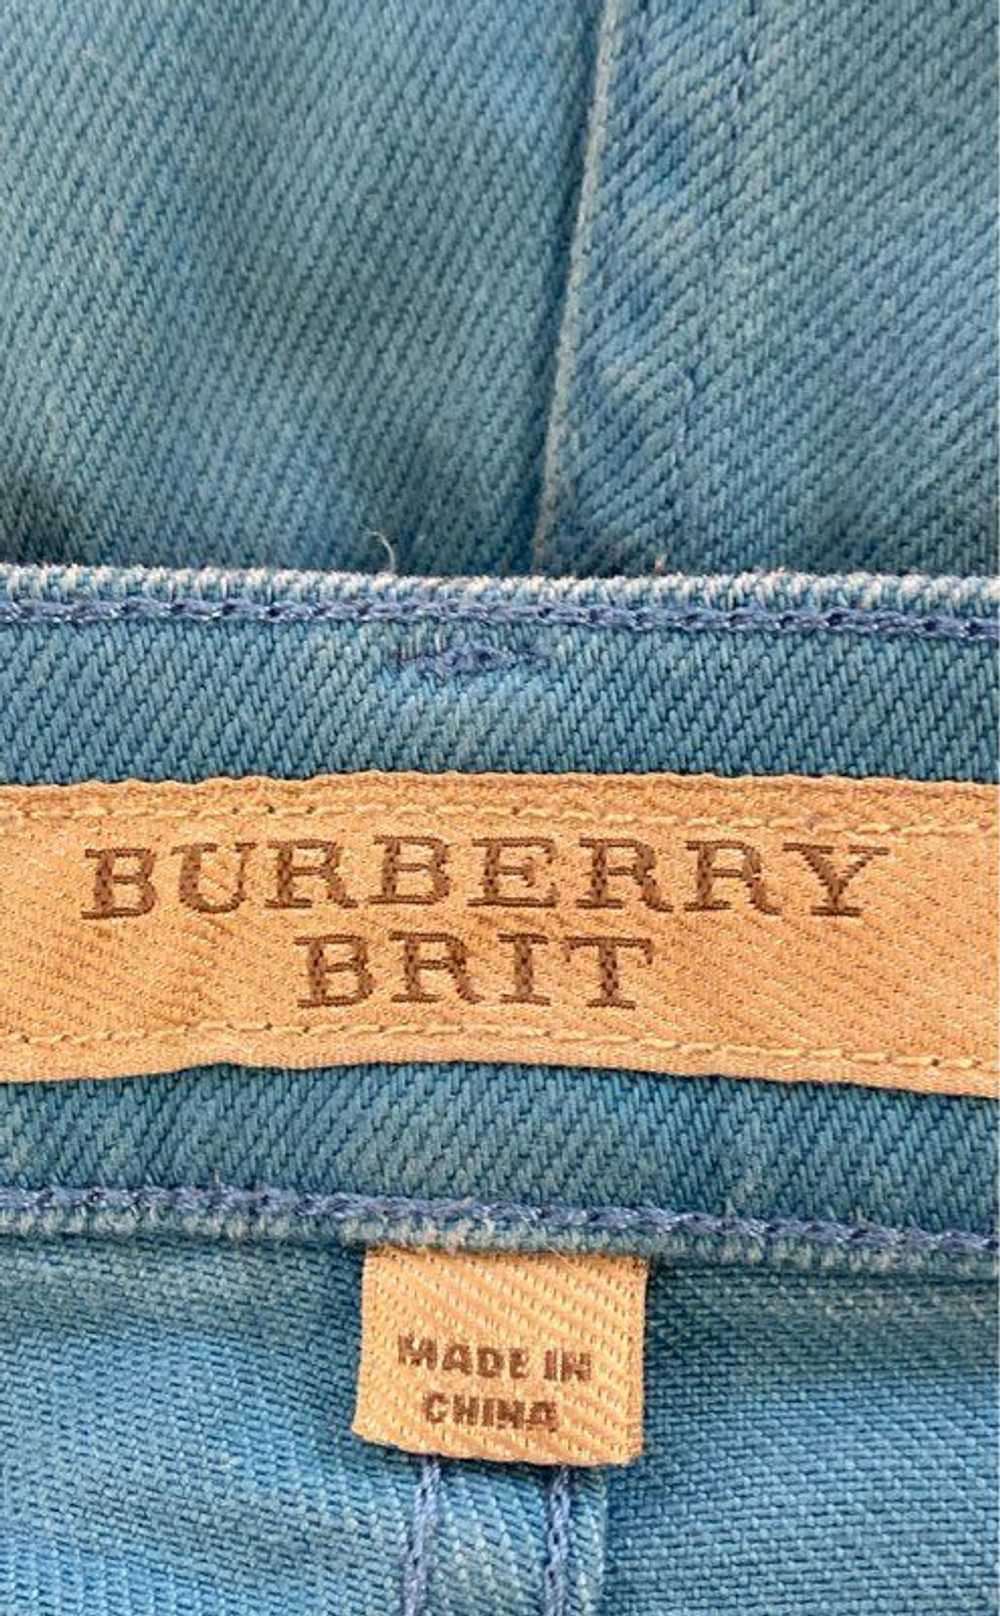 Burberry Brit Blue Jeans - Size 30 - image 3